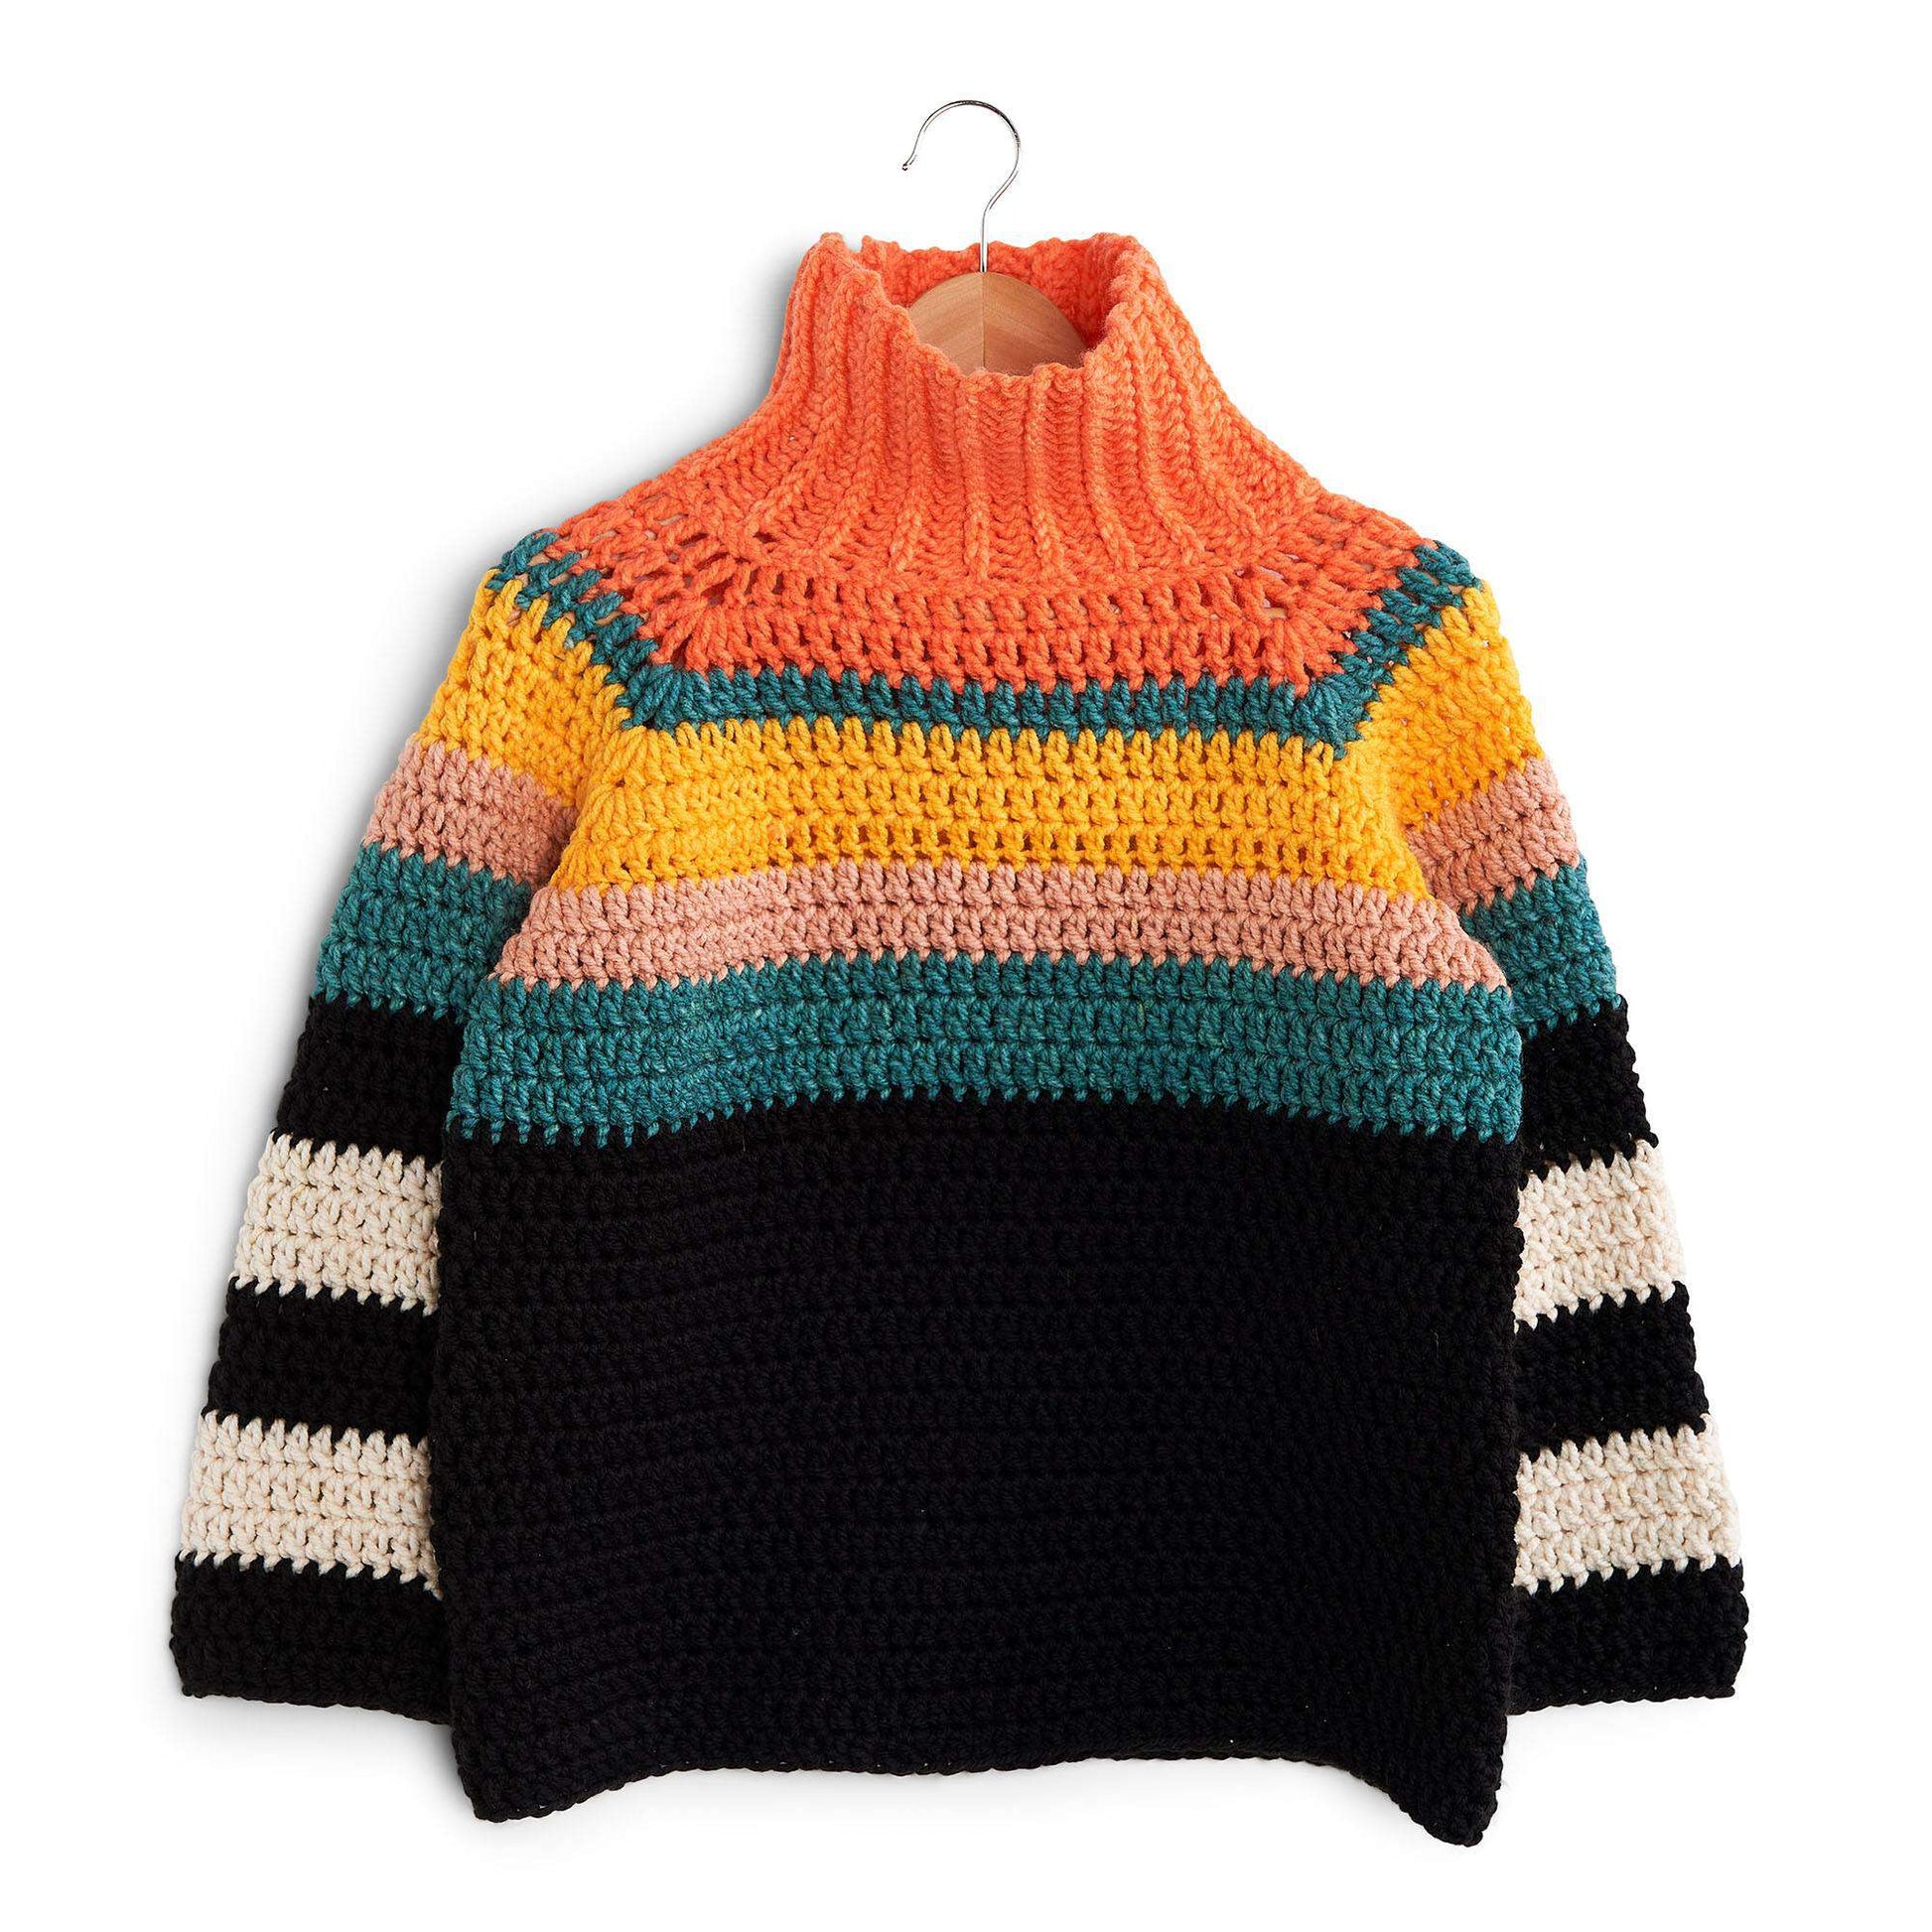 Free Caron Stripe It From The Top Crochet Sweater Pattern